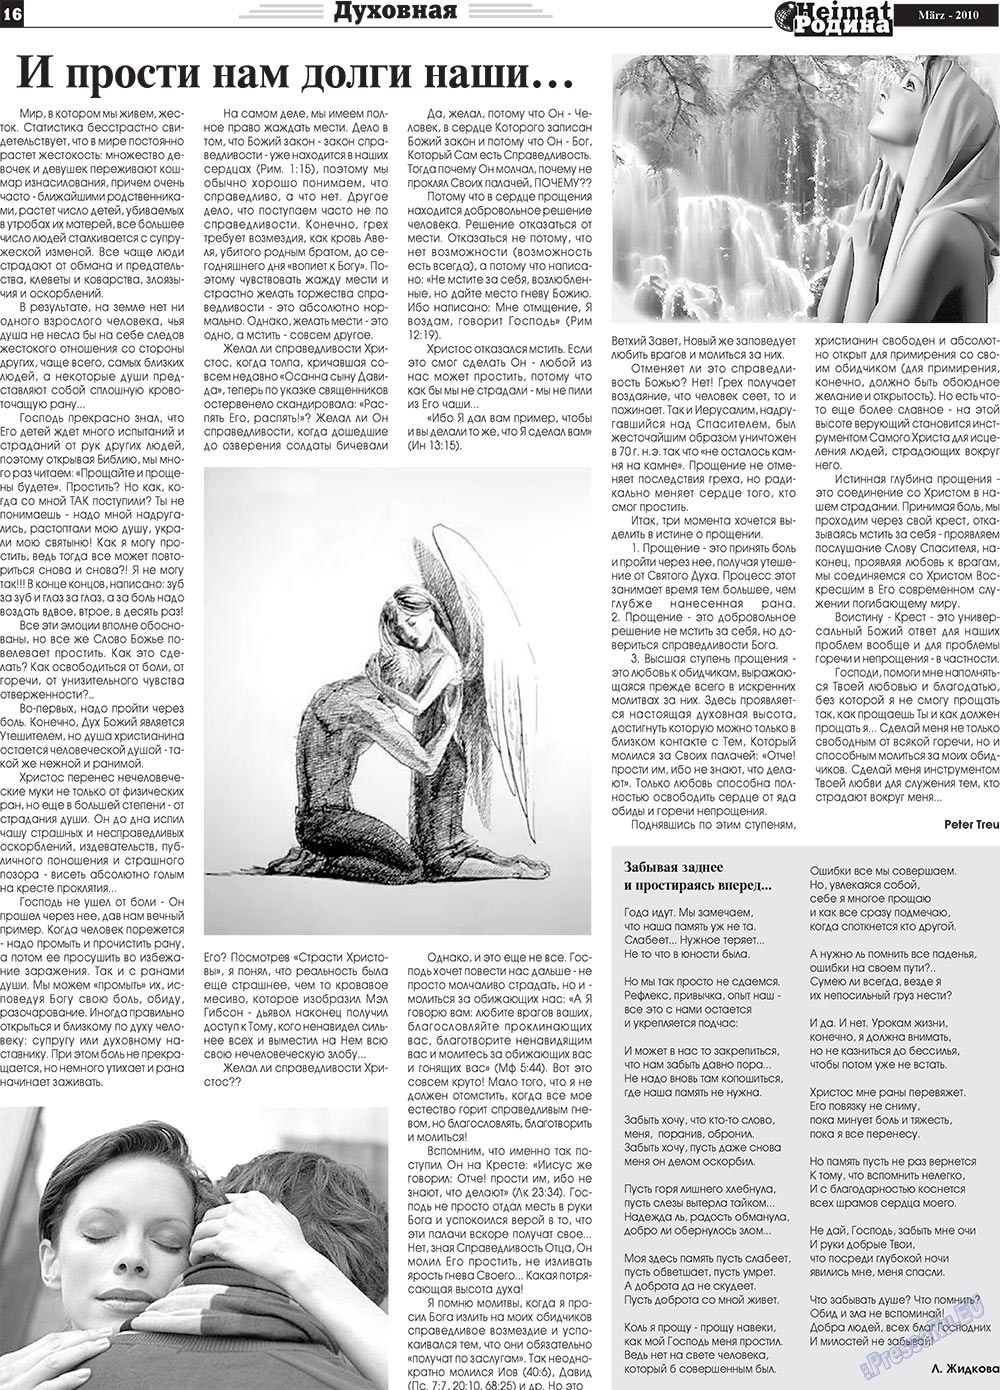 Heimat-Родина (газета). 2010 год, номер 3, стр. 16